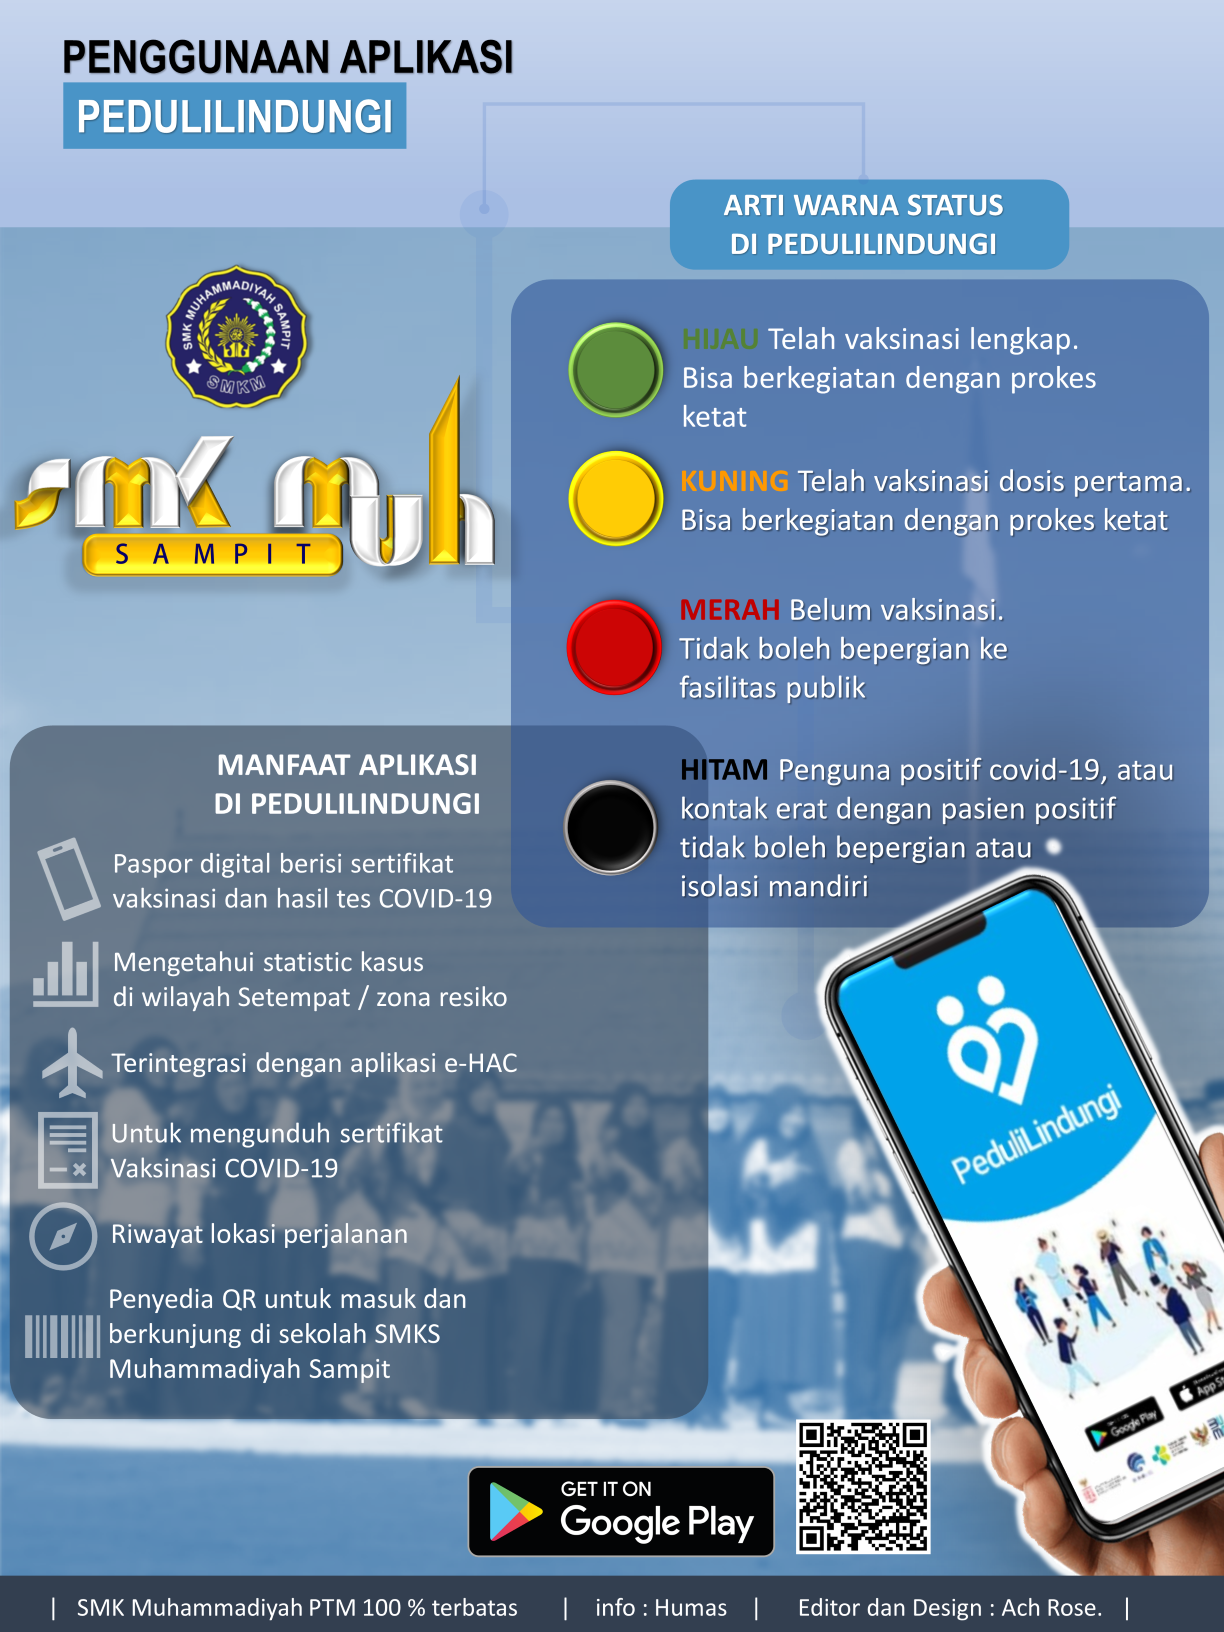 PTM 100% Terbatas di SMK Muhammadiyah Sampit